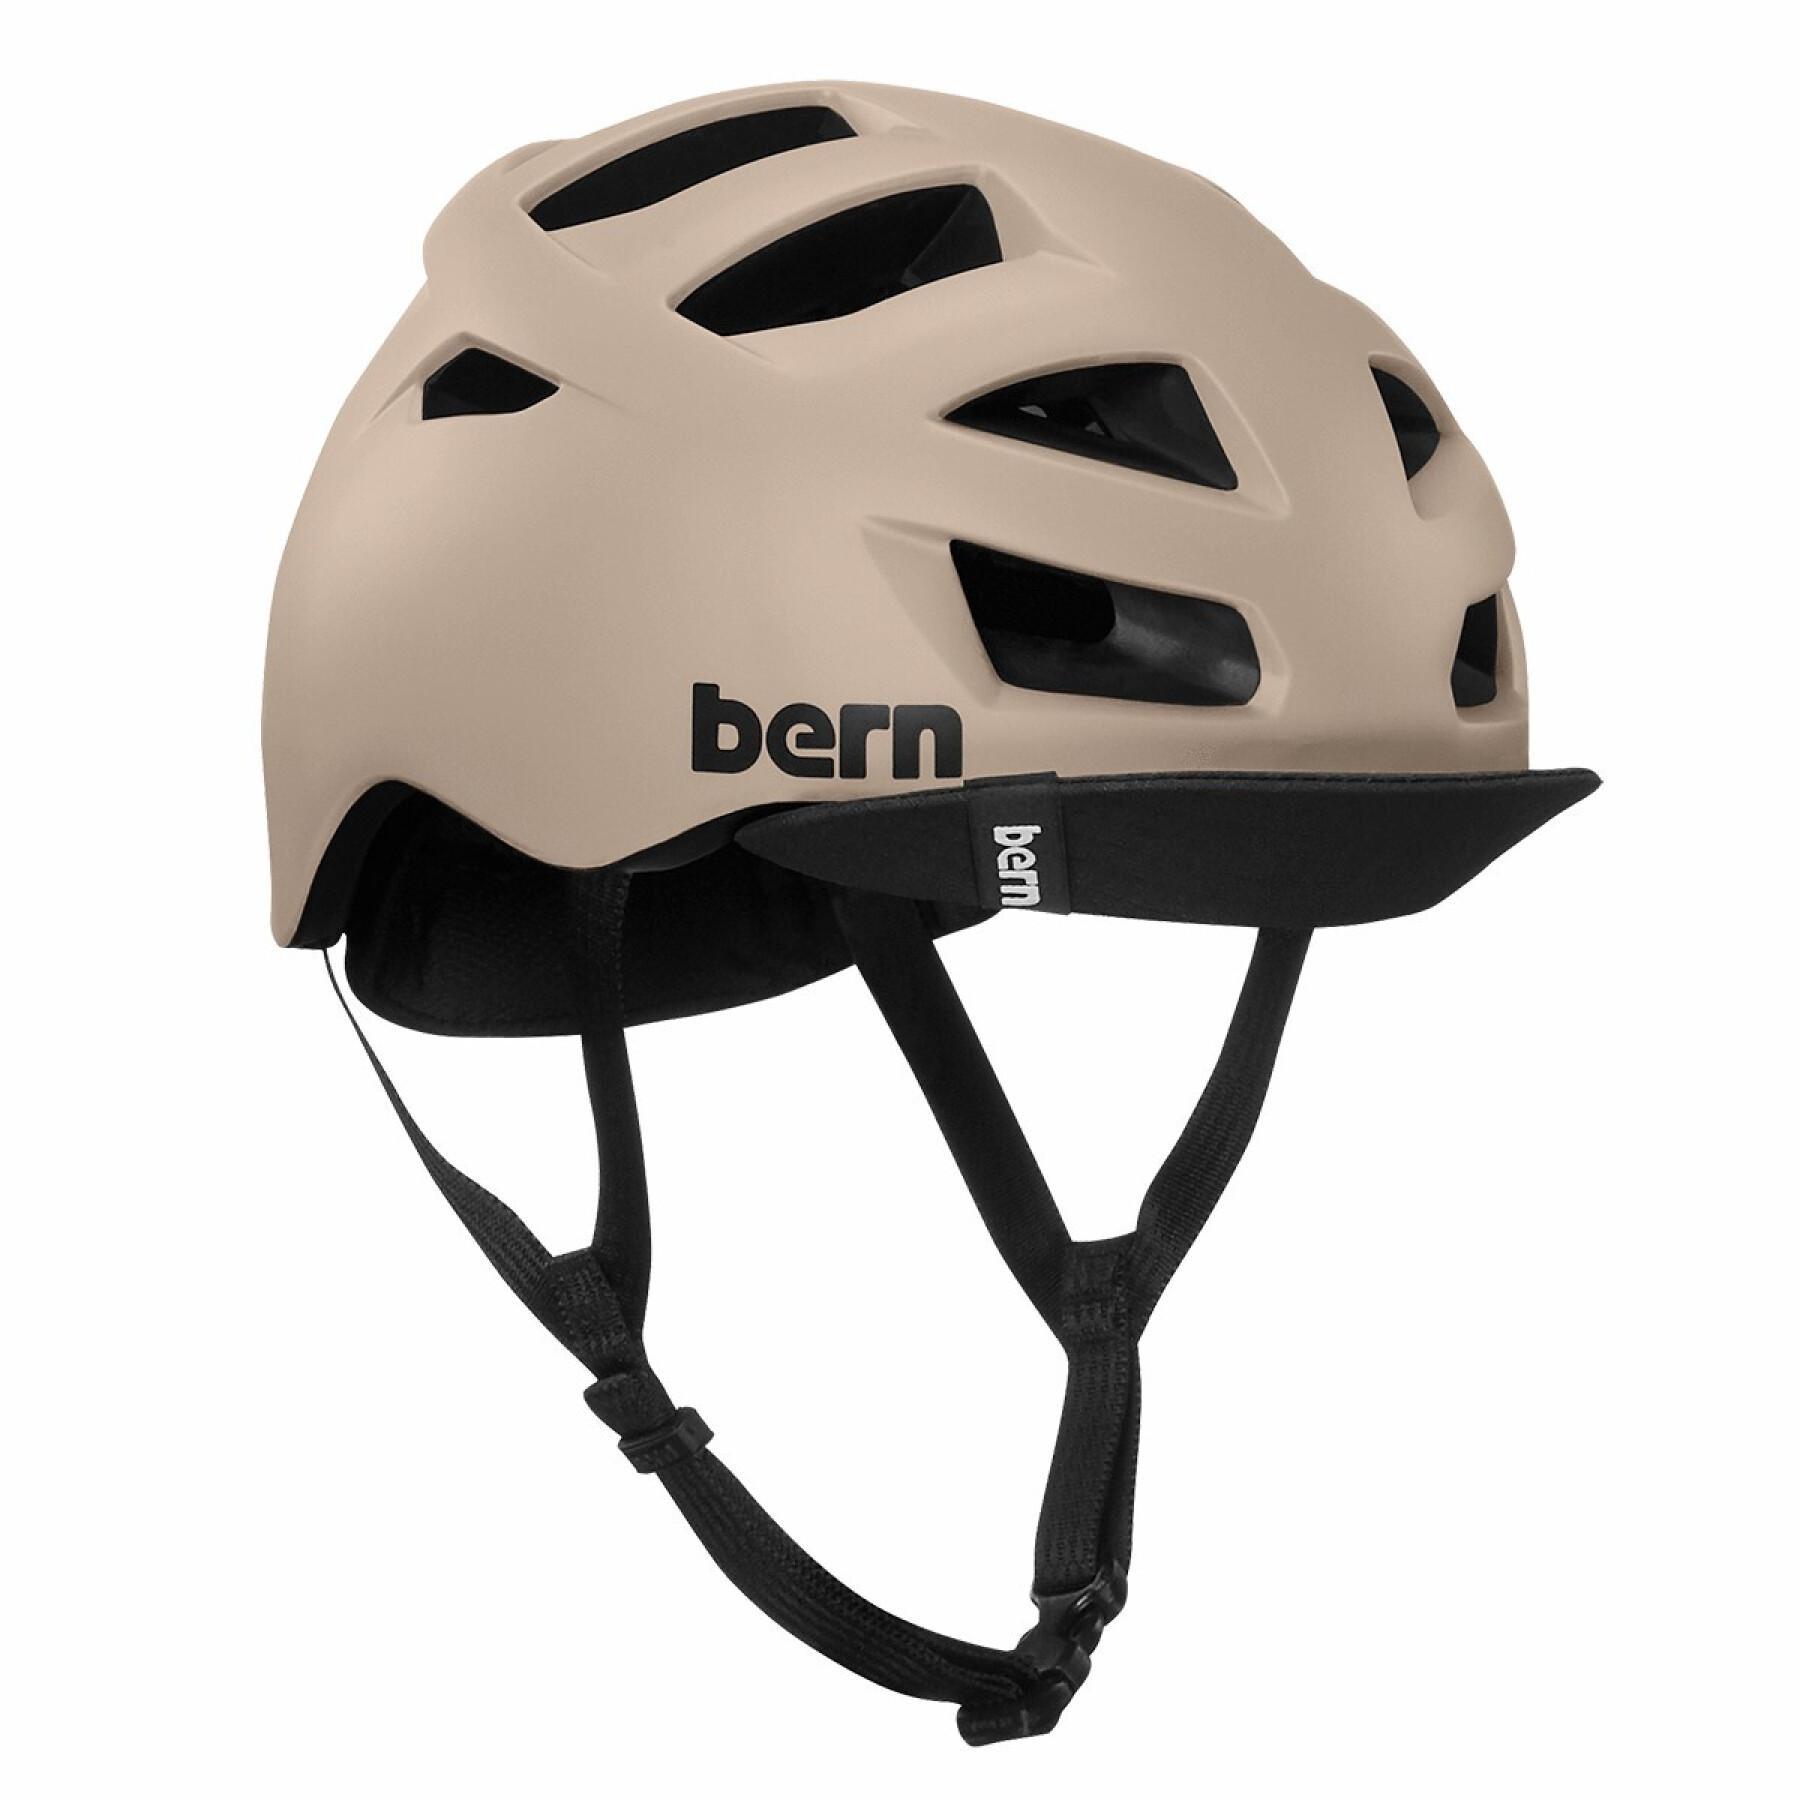 Bike helmet with pivoting visor Bern Allston